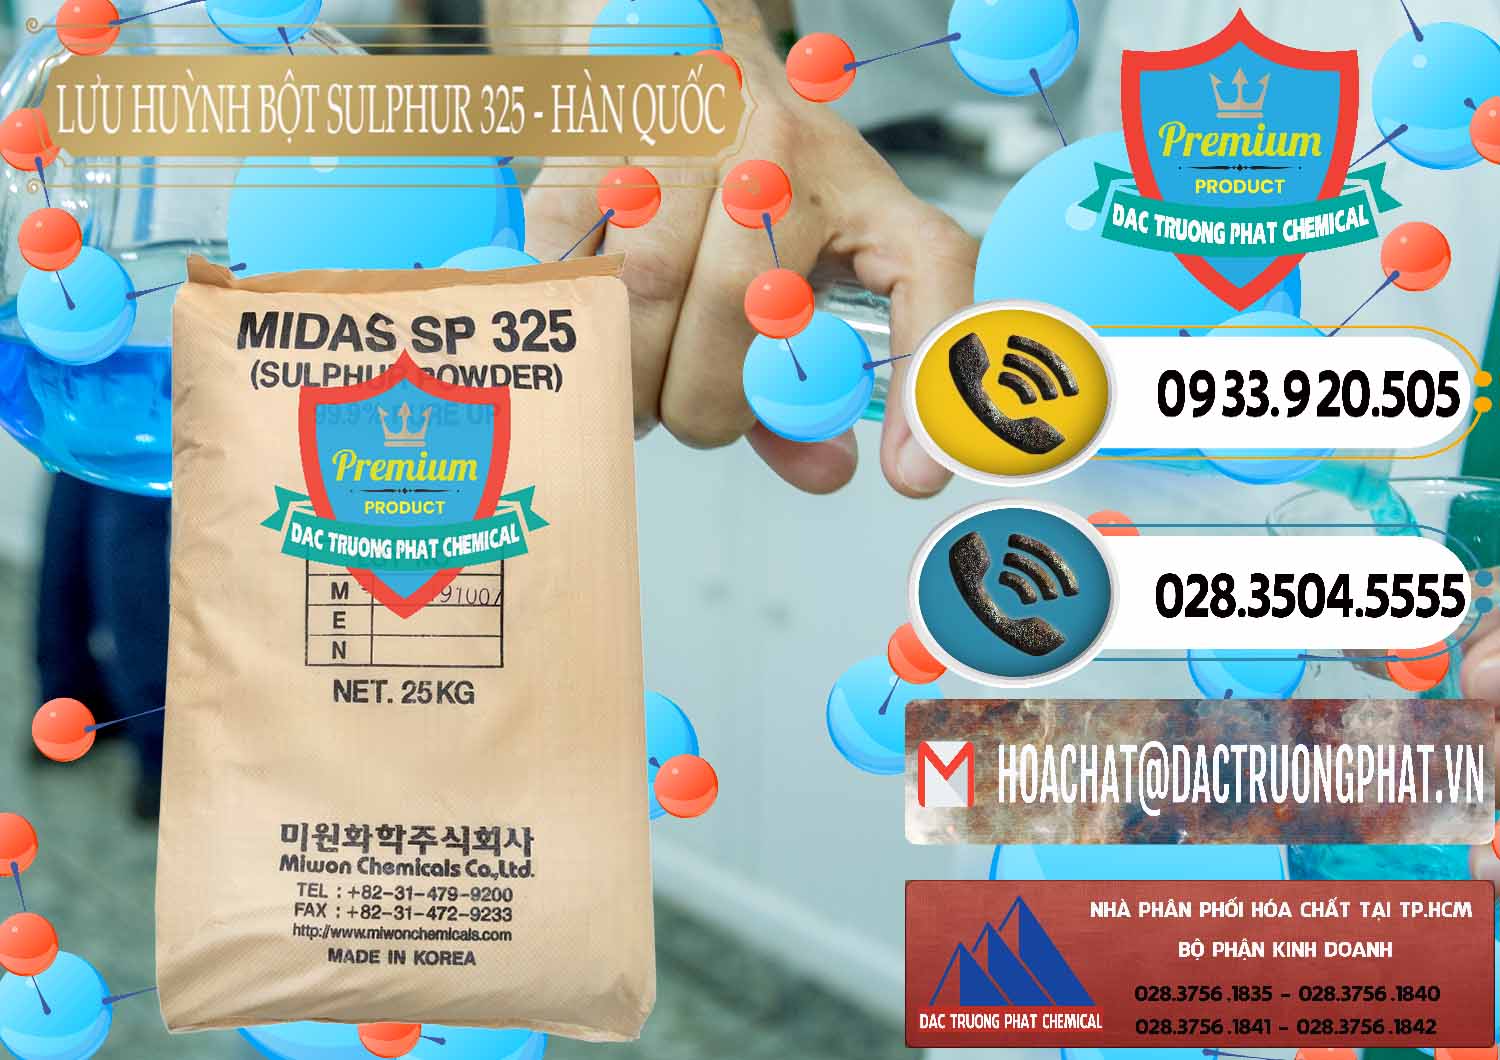 Công ty bán _ cung ứng Lưu huỳnh Bột - Sulfur Powder Midas SP 325 Hàn Quốc Korea - 0198 - Cty chuyên cung cấp - nhập khẩu hóa chất tại TP.HCM - hoachatdetnhuom.vn